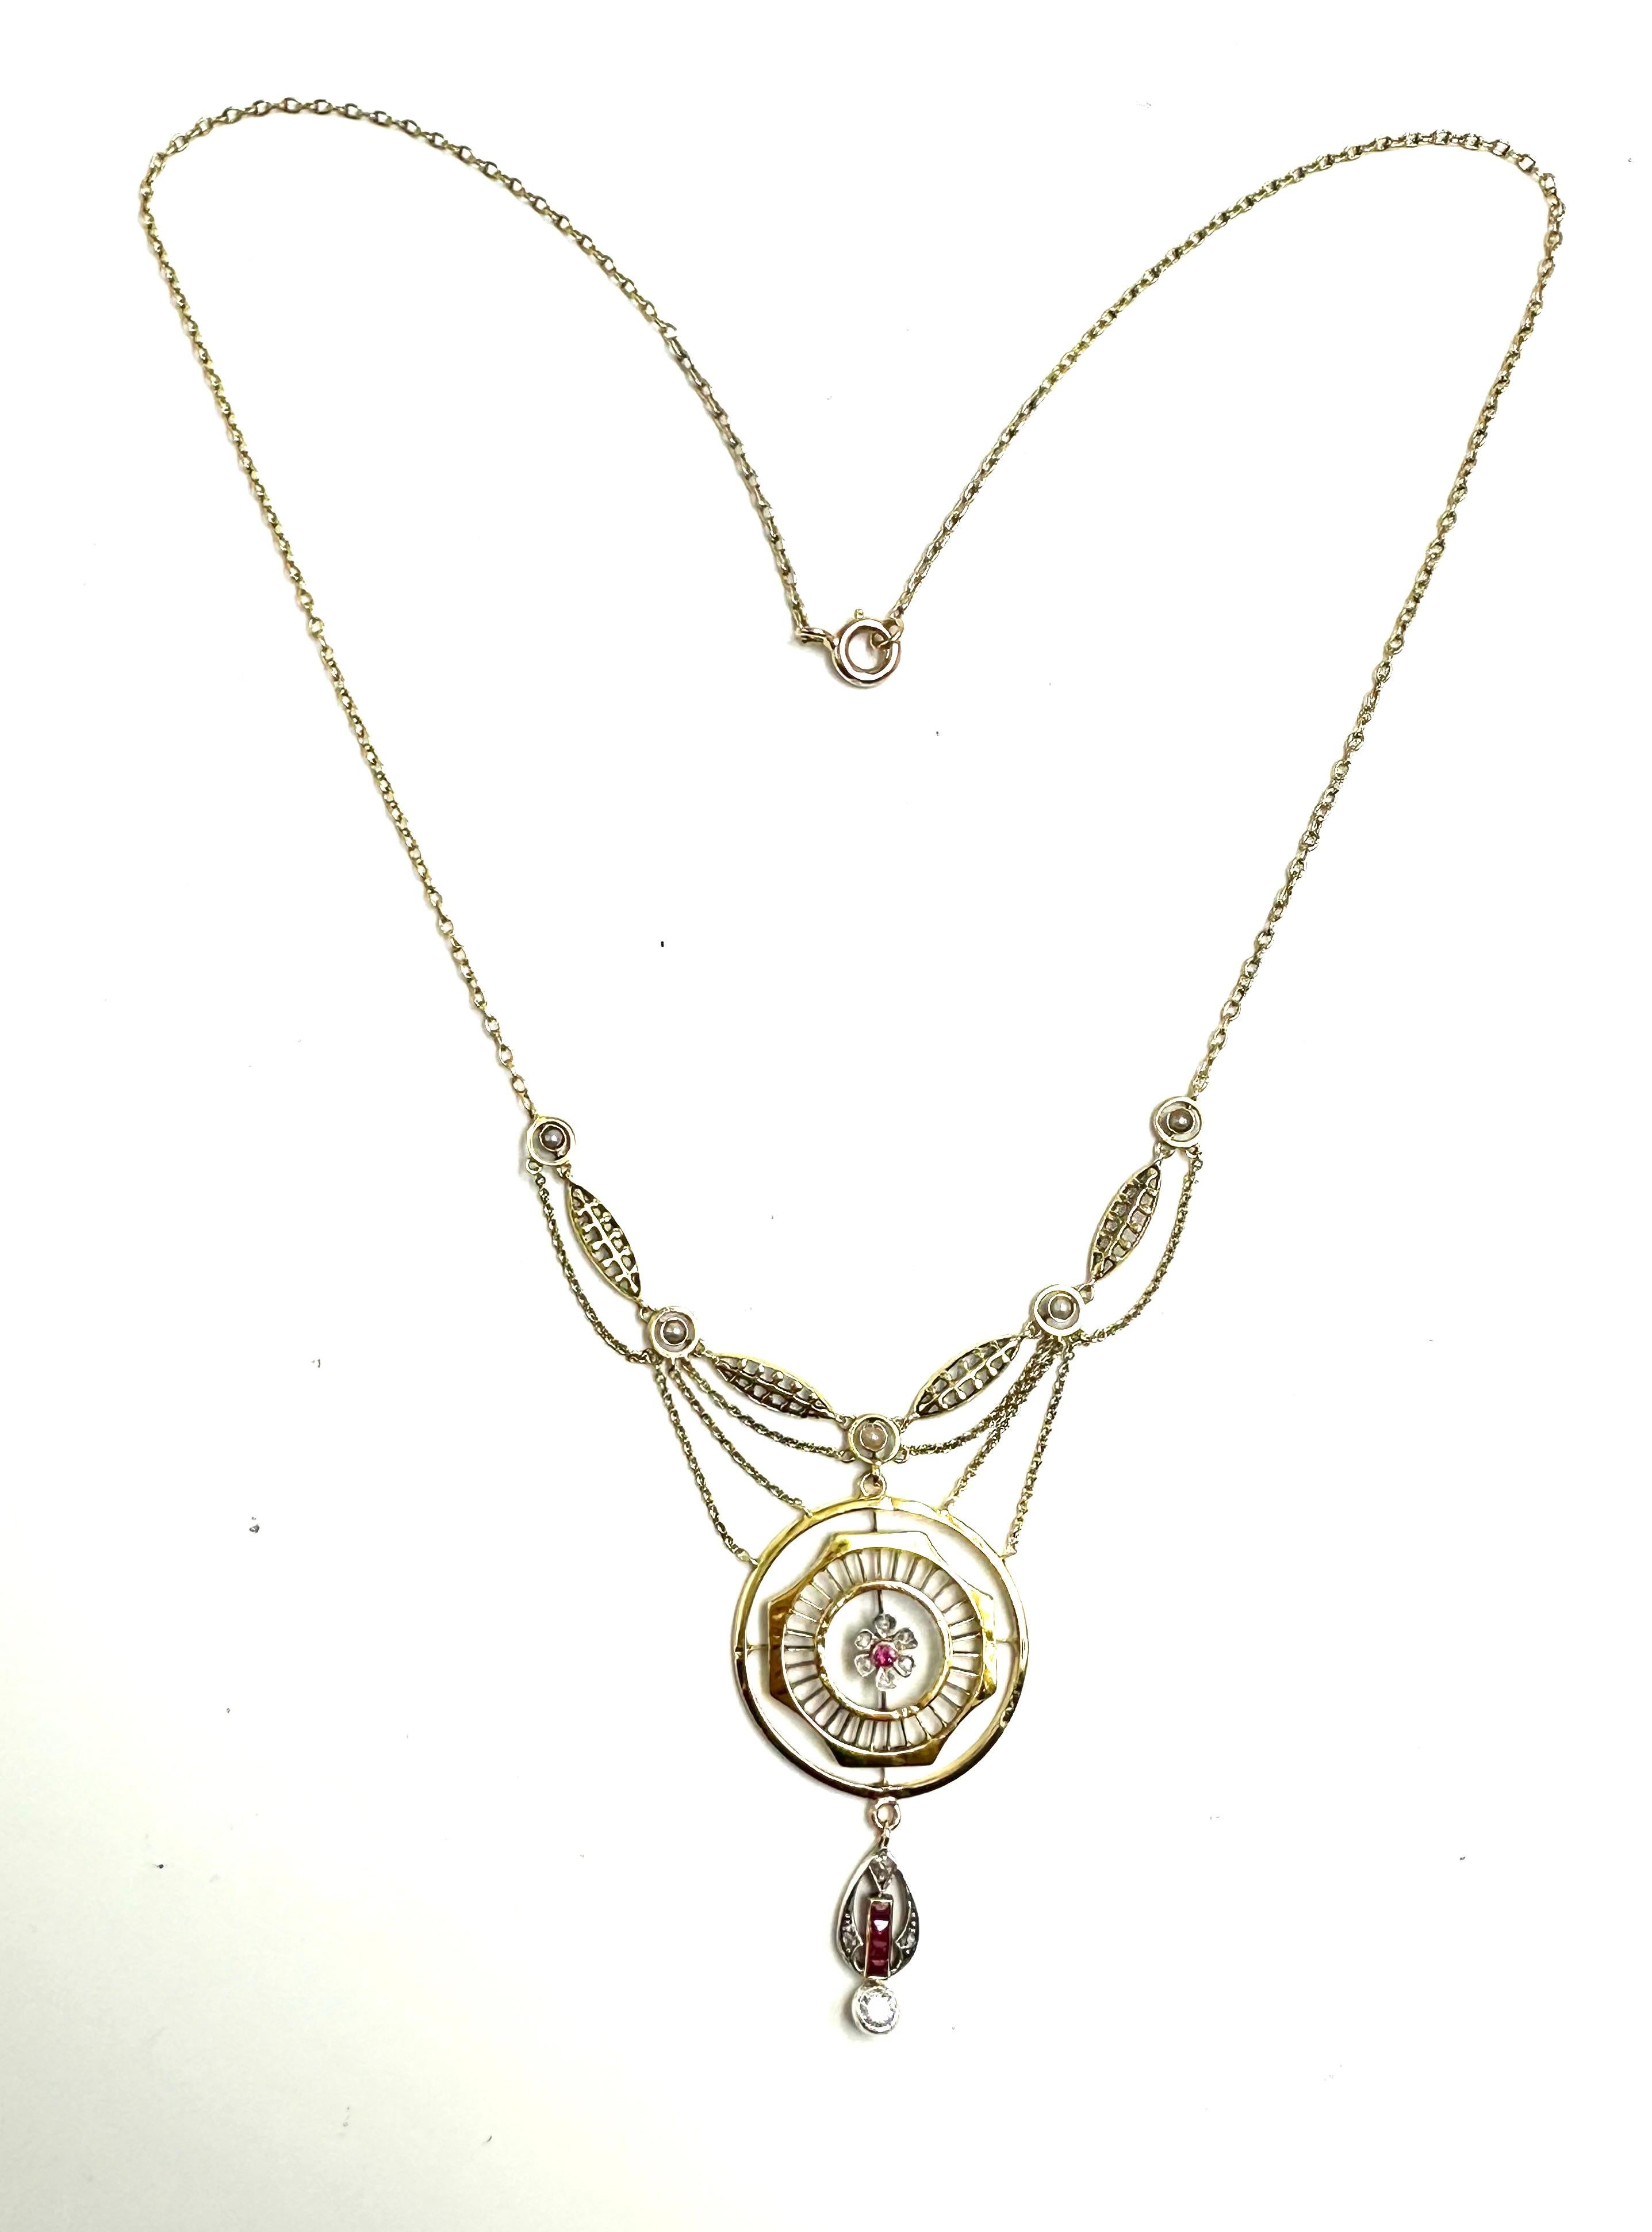 Raro e delicatissimo collier con pendente rotondo di produzione tardo ottocentesca, area Impero Austroungarico.
Fulgido esempio di gioielleria 